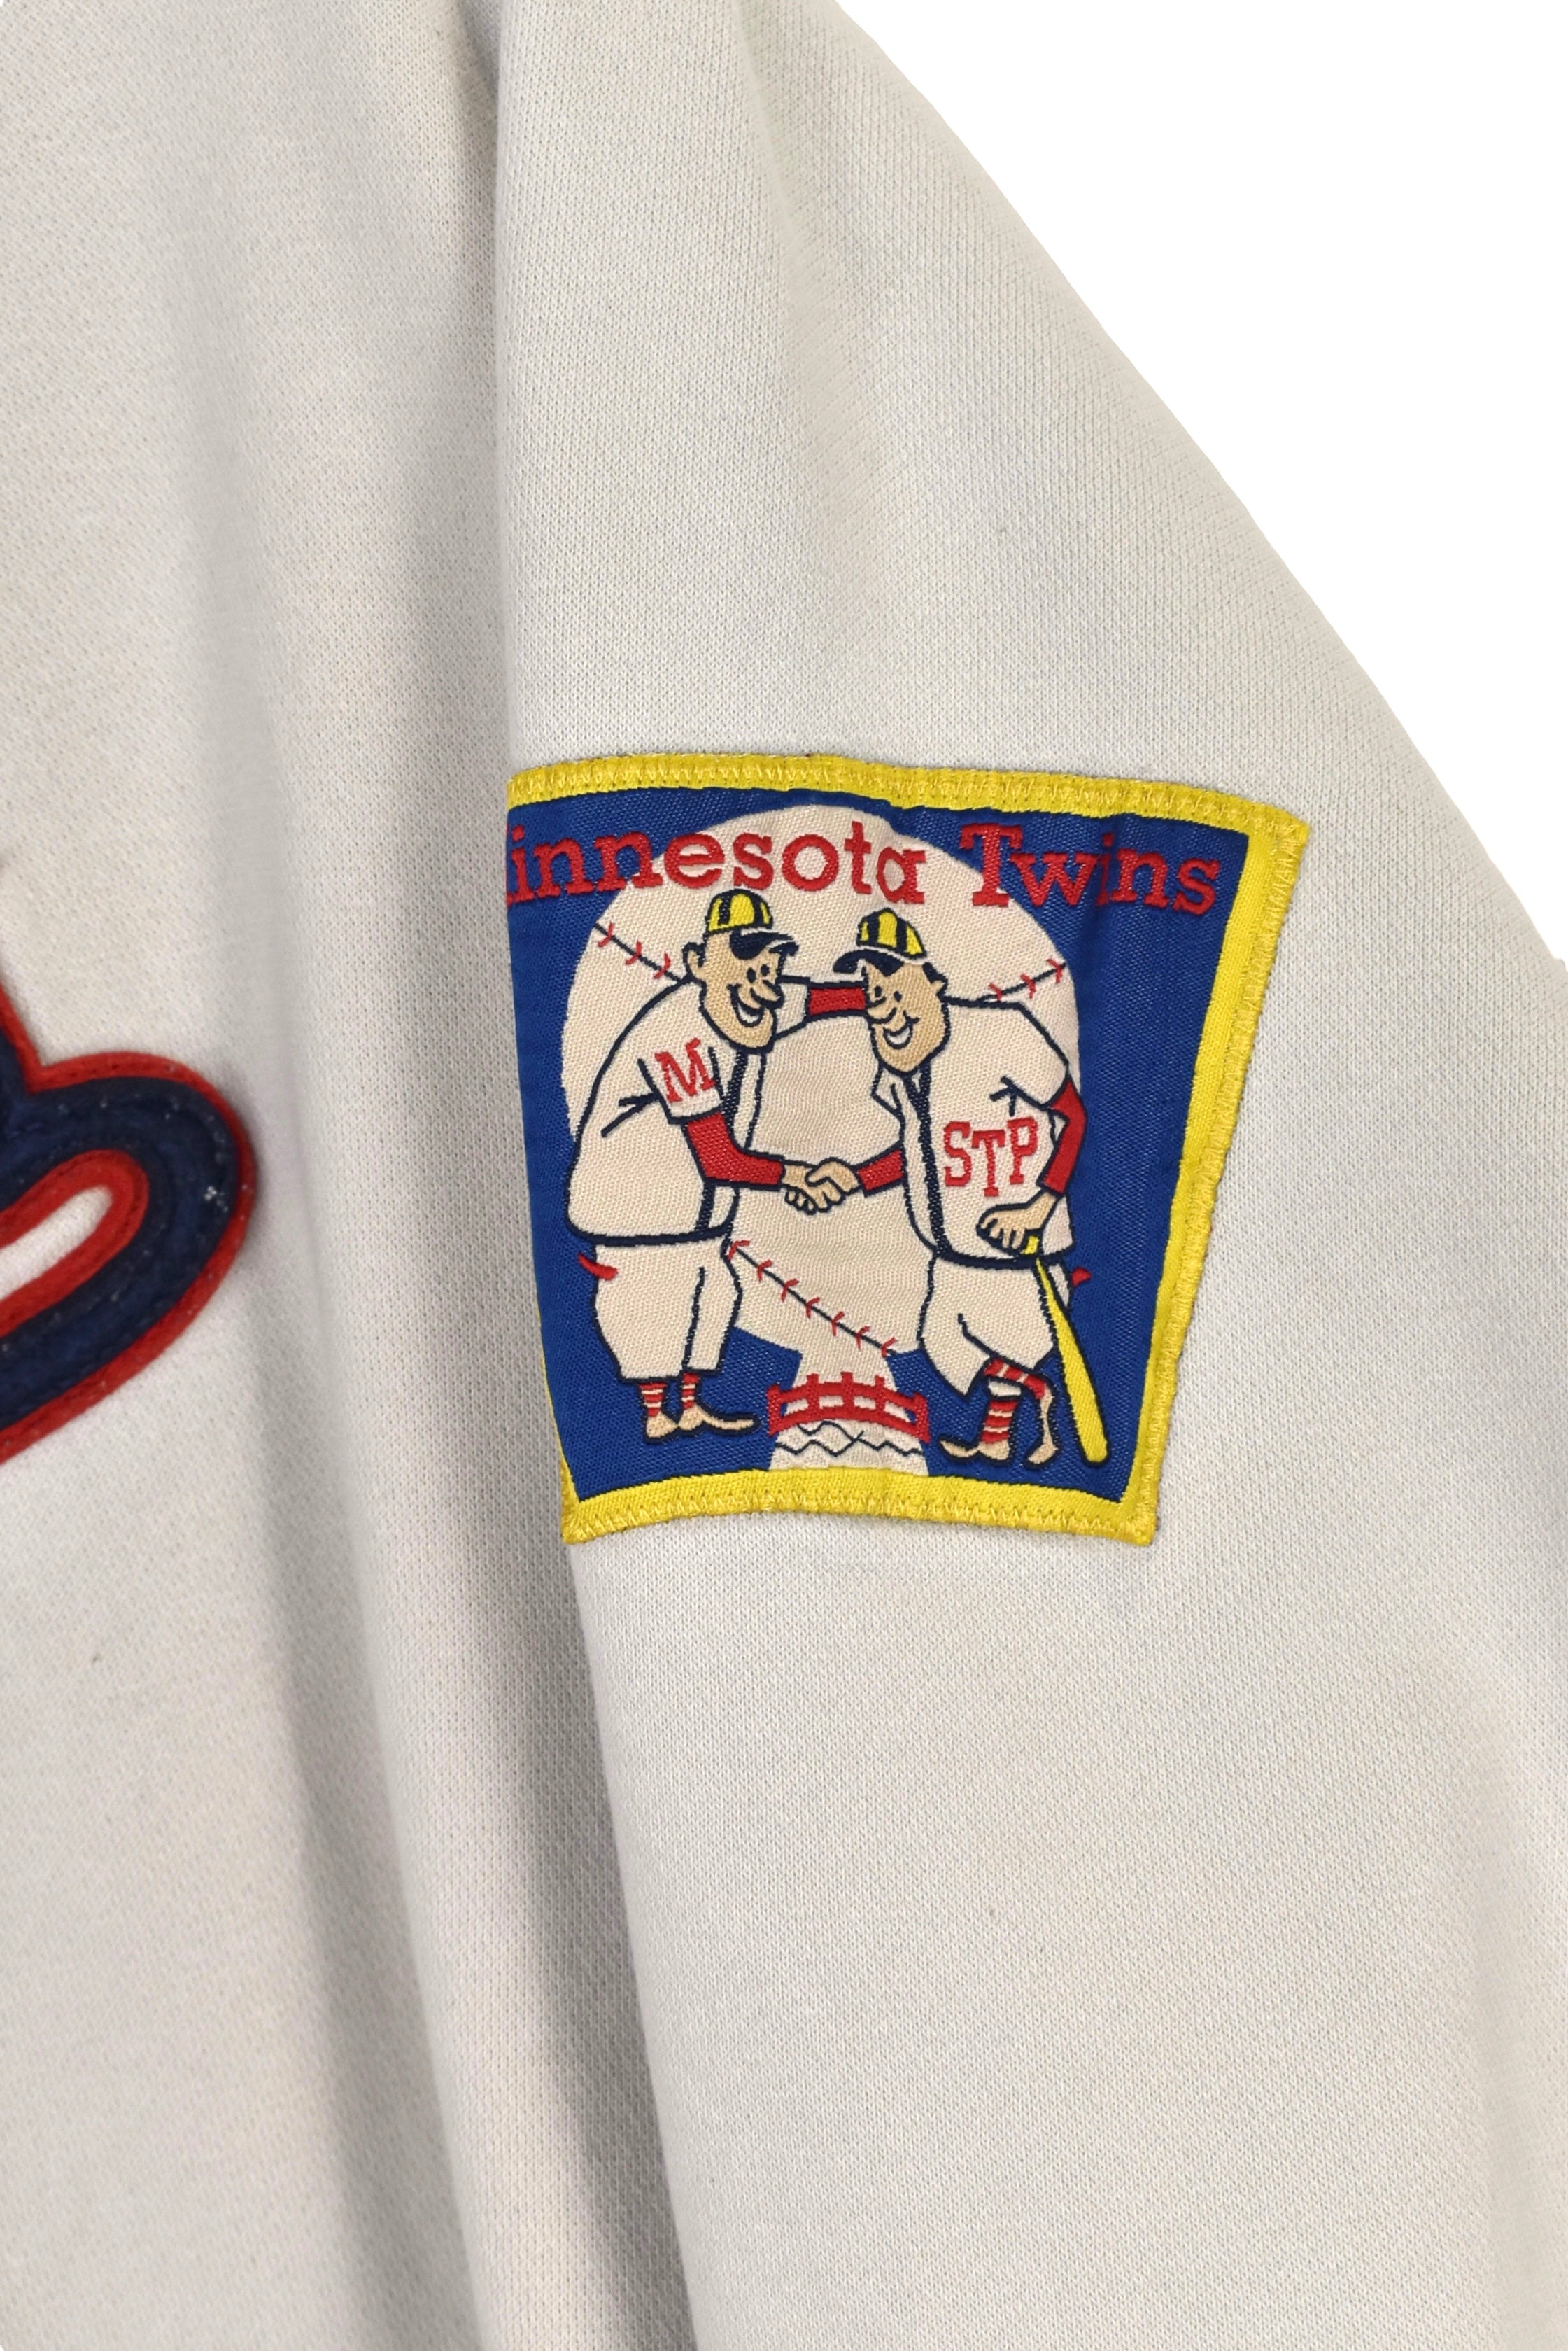 Vintage Minnesota Twins hoodie (L), cream MLB sweatshirt